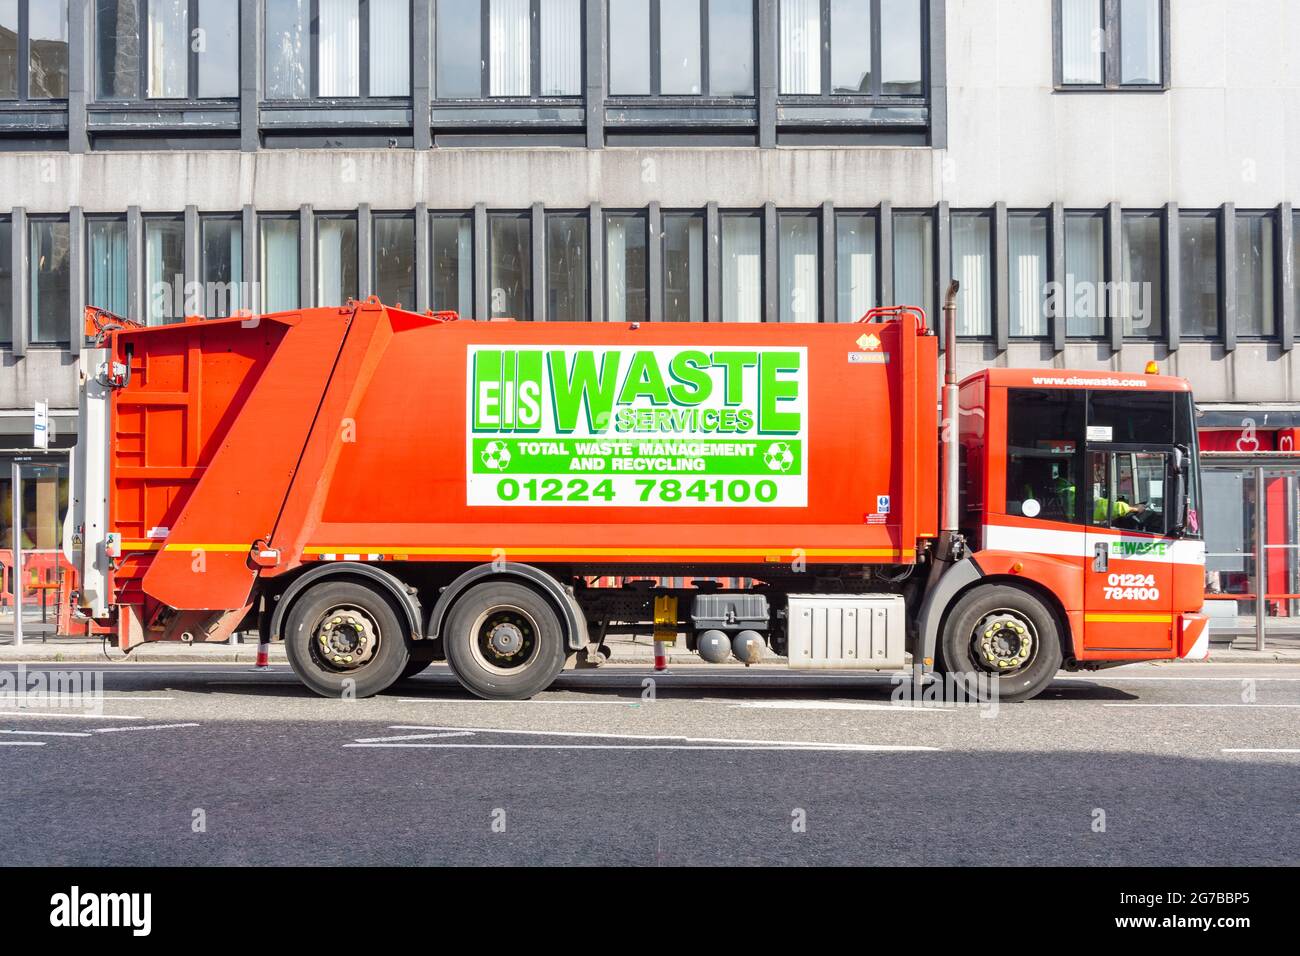 Eis Waste Services Müllwagen, Union Street, City of Aberdeen, Aberdeenshire, Schottland, Vereinigtes Königreich Stockfoto